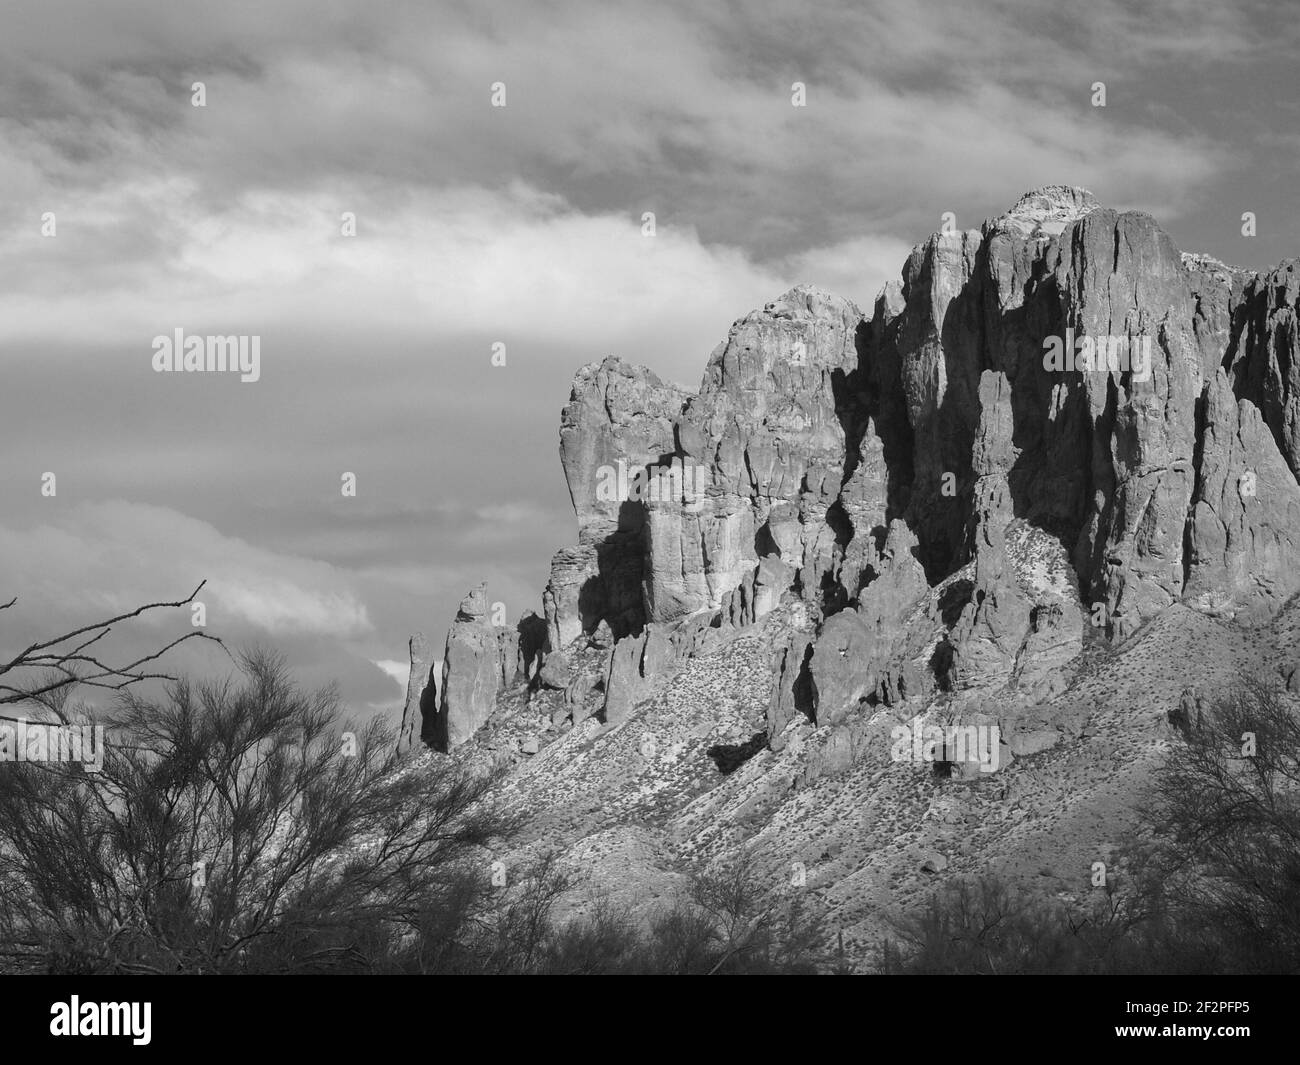 Superstition Mountain in Arizona in bianco e nero e colore. Situato nella Tonto National Forest, è una vista spettacolare e il luogo ideale per escursioni a piedi. Foto Stock